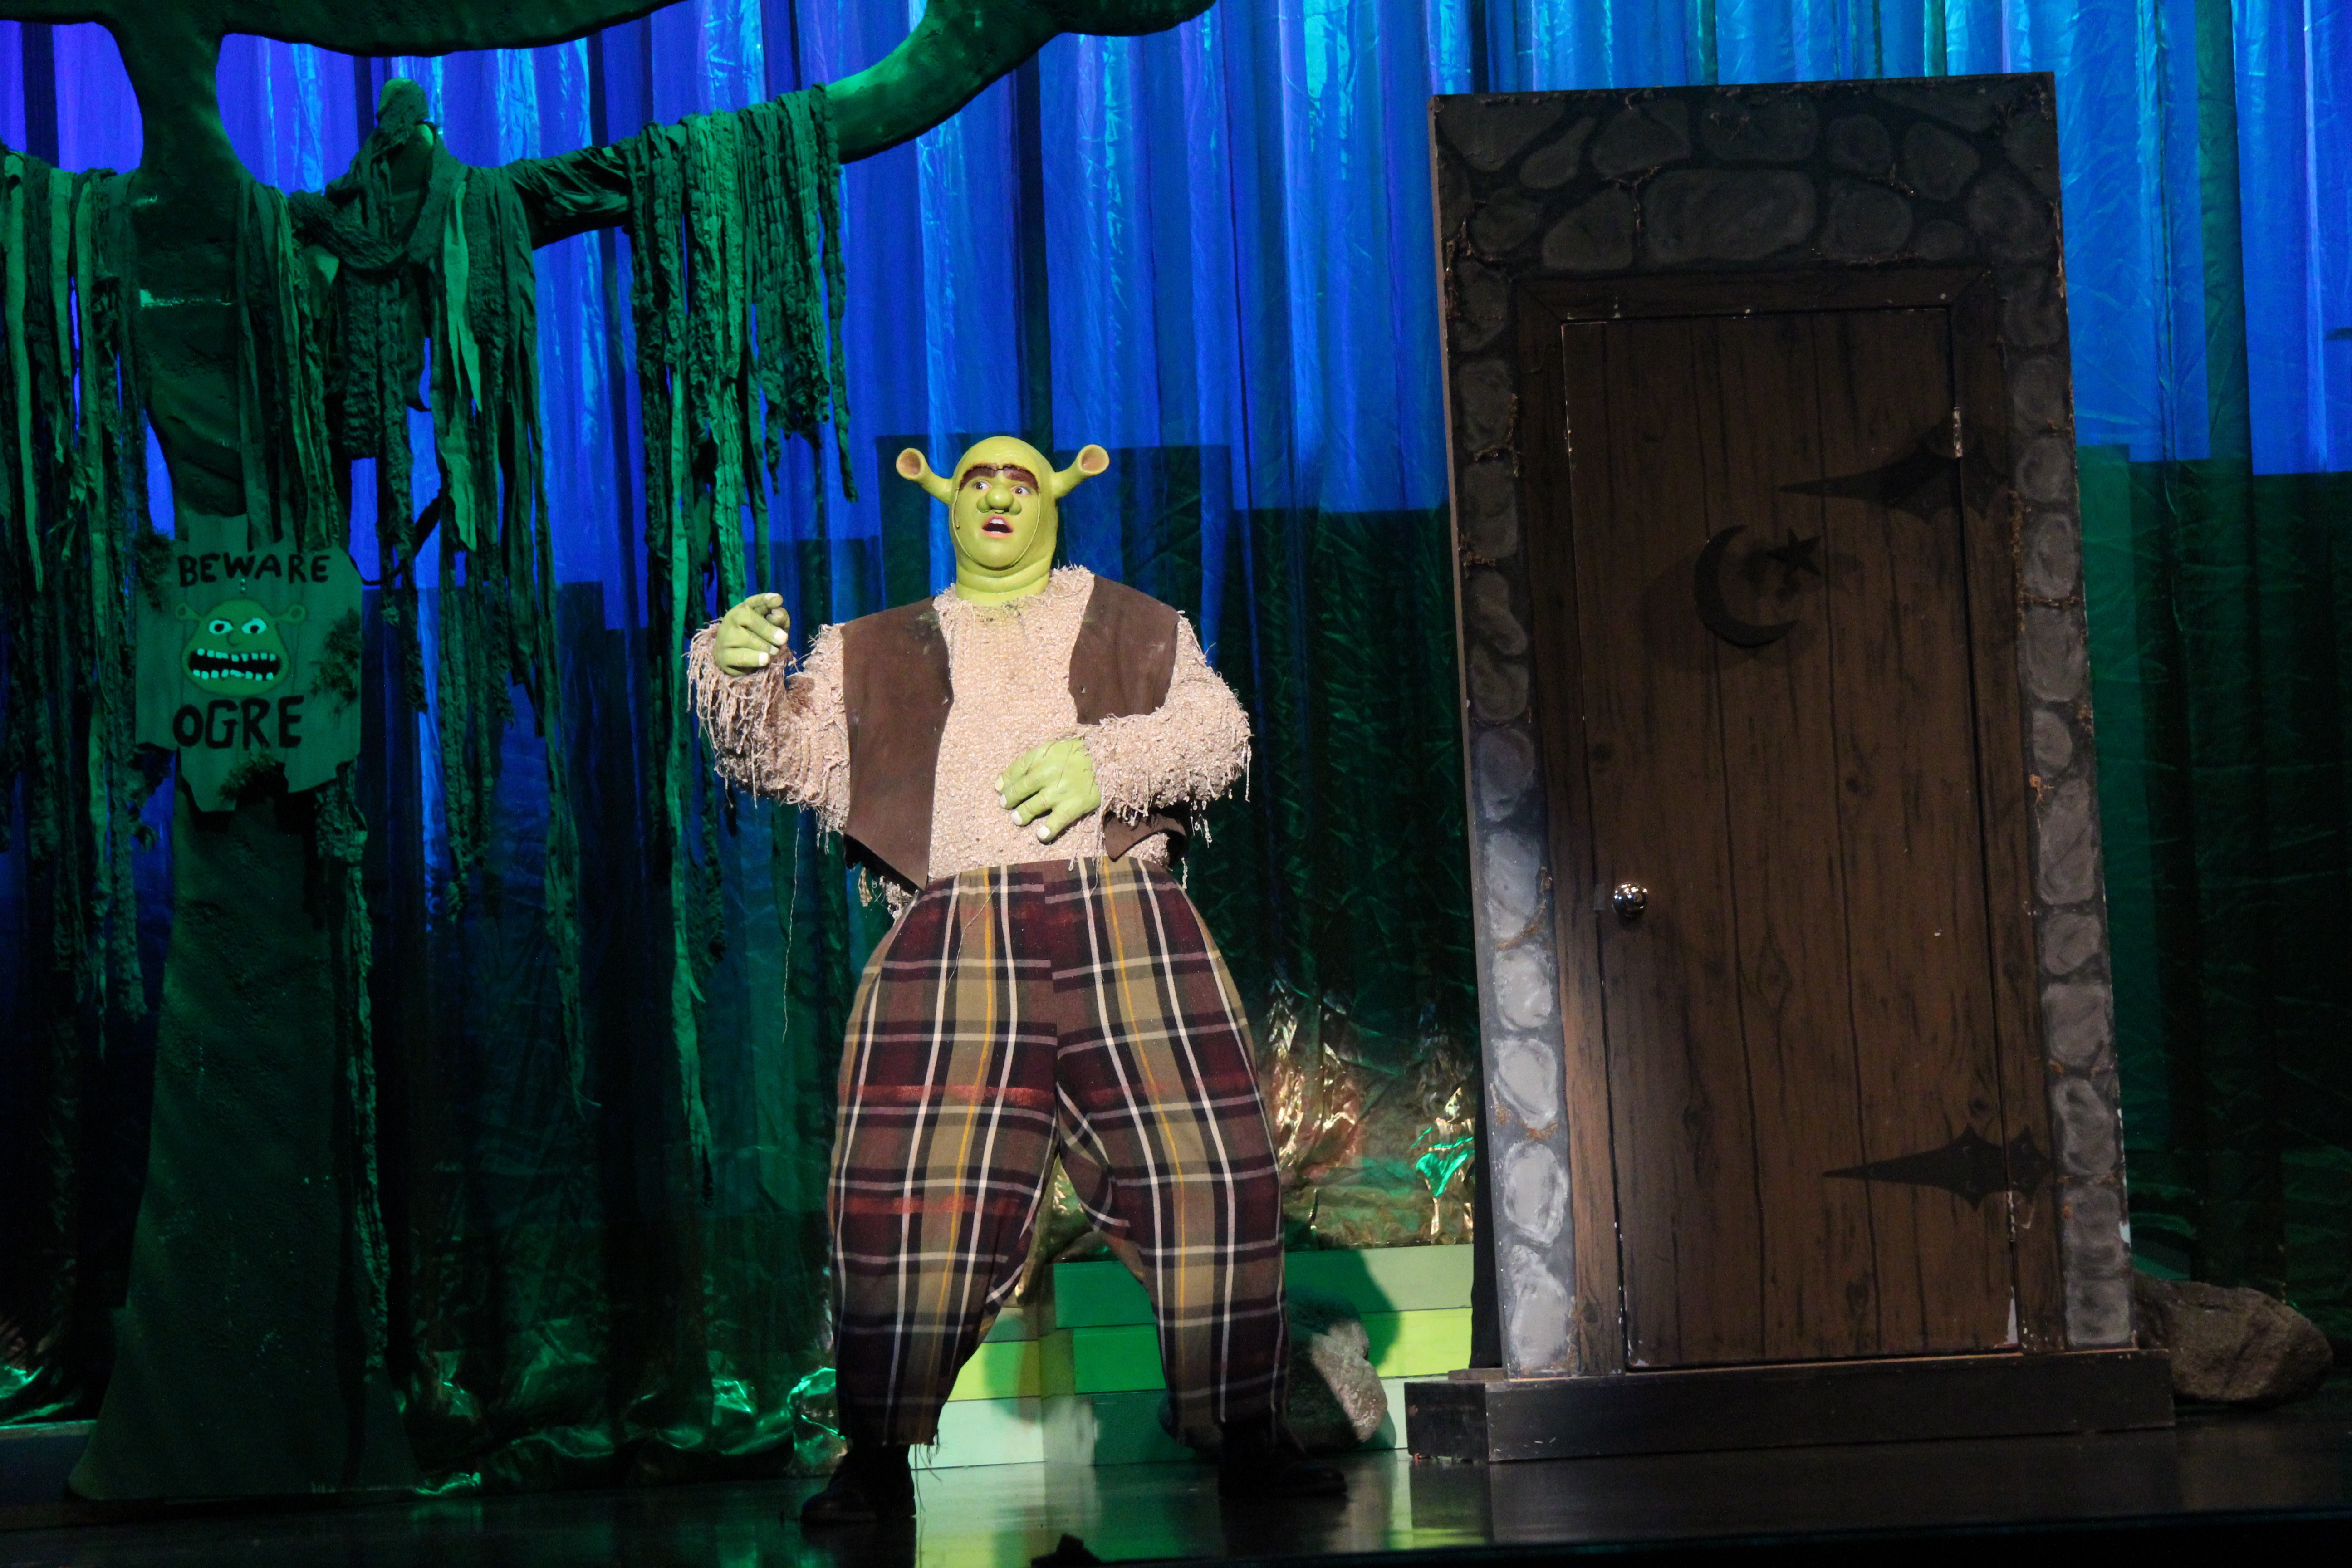 Shrek the Musical 2015